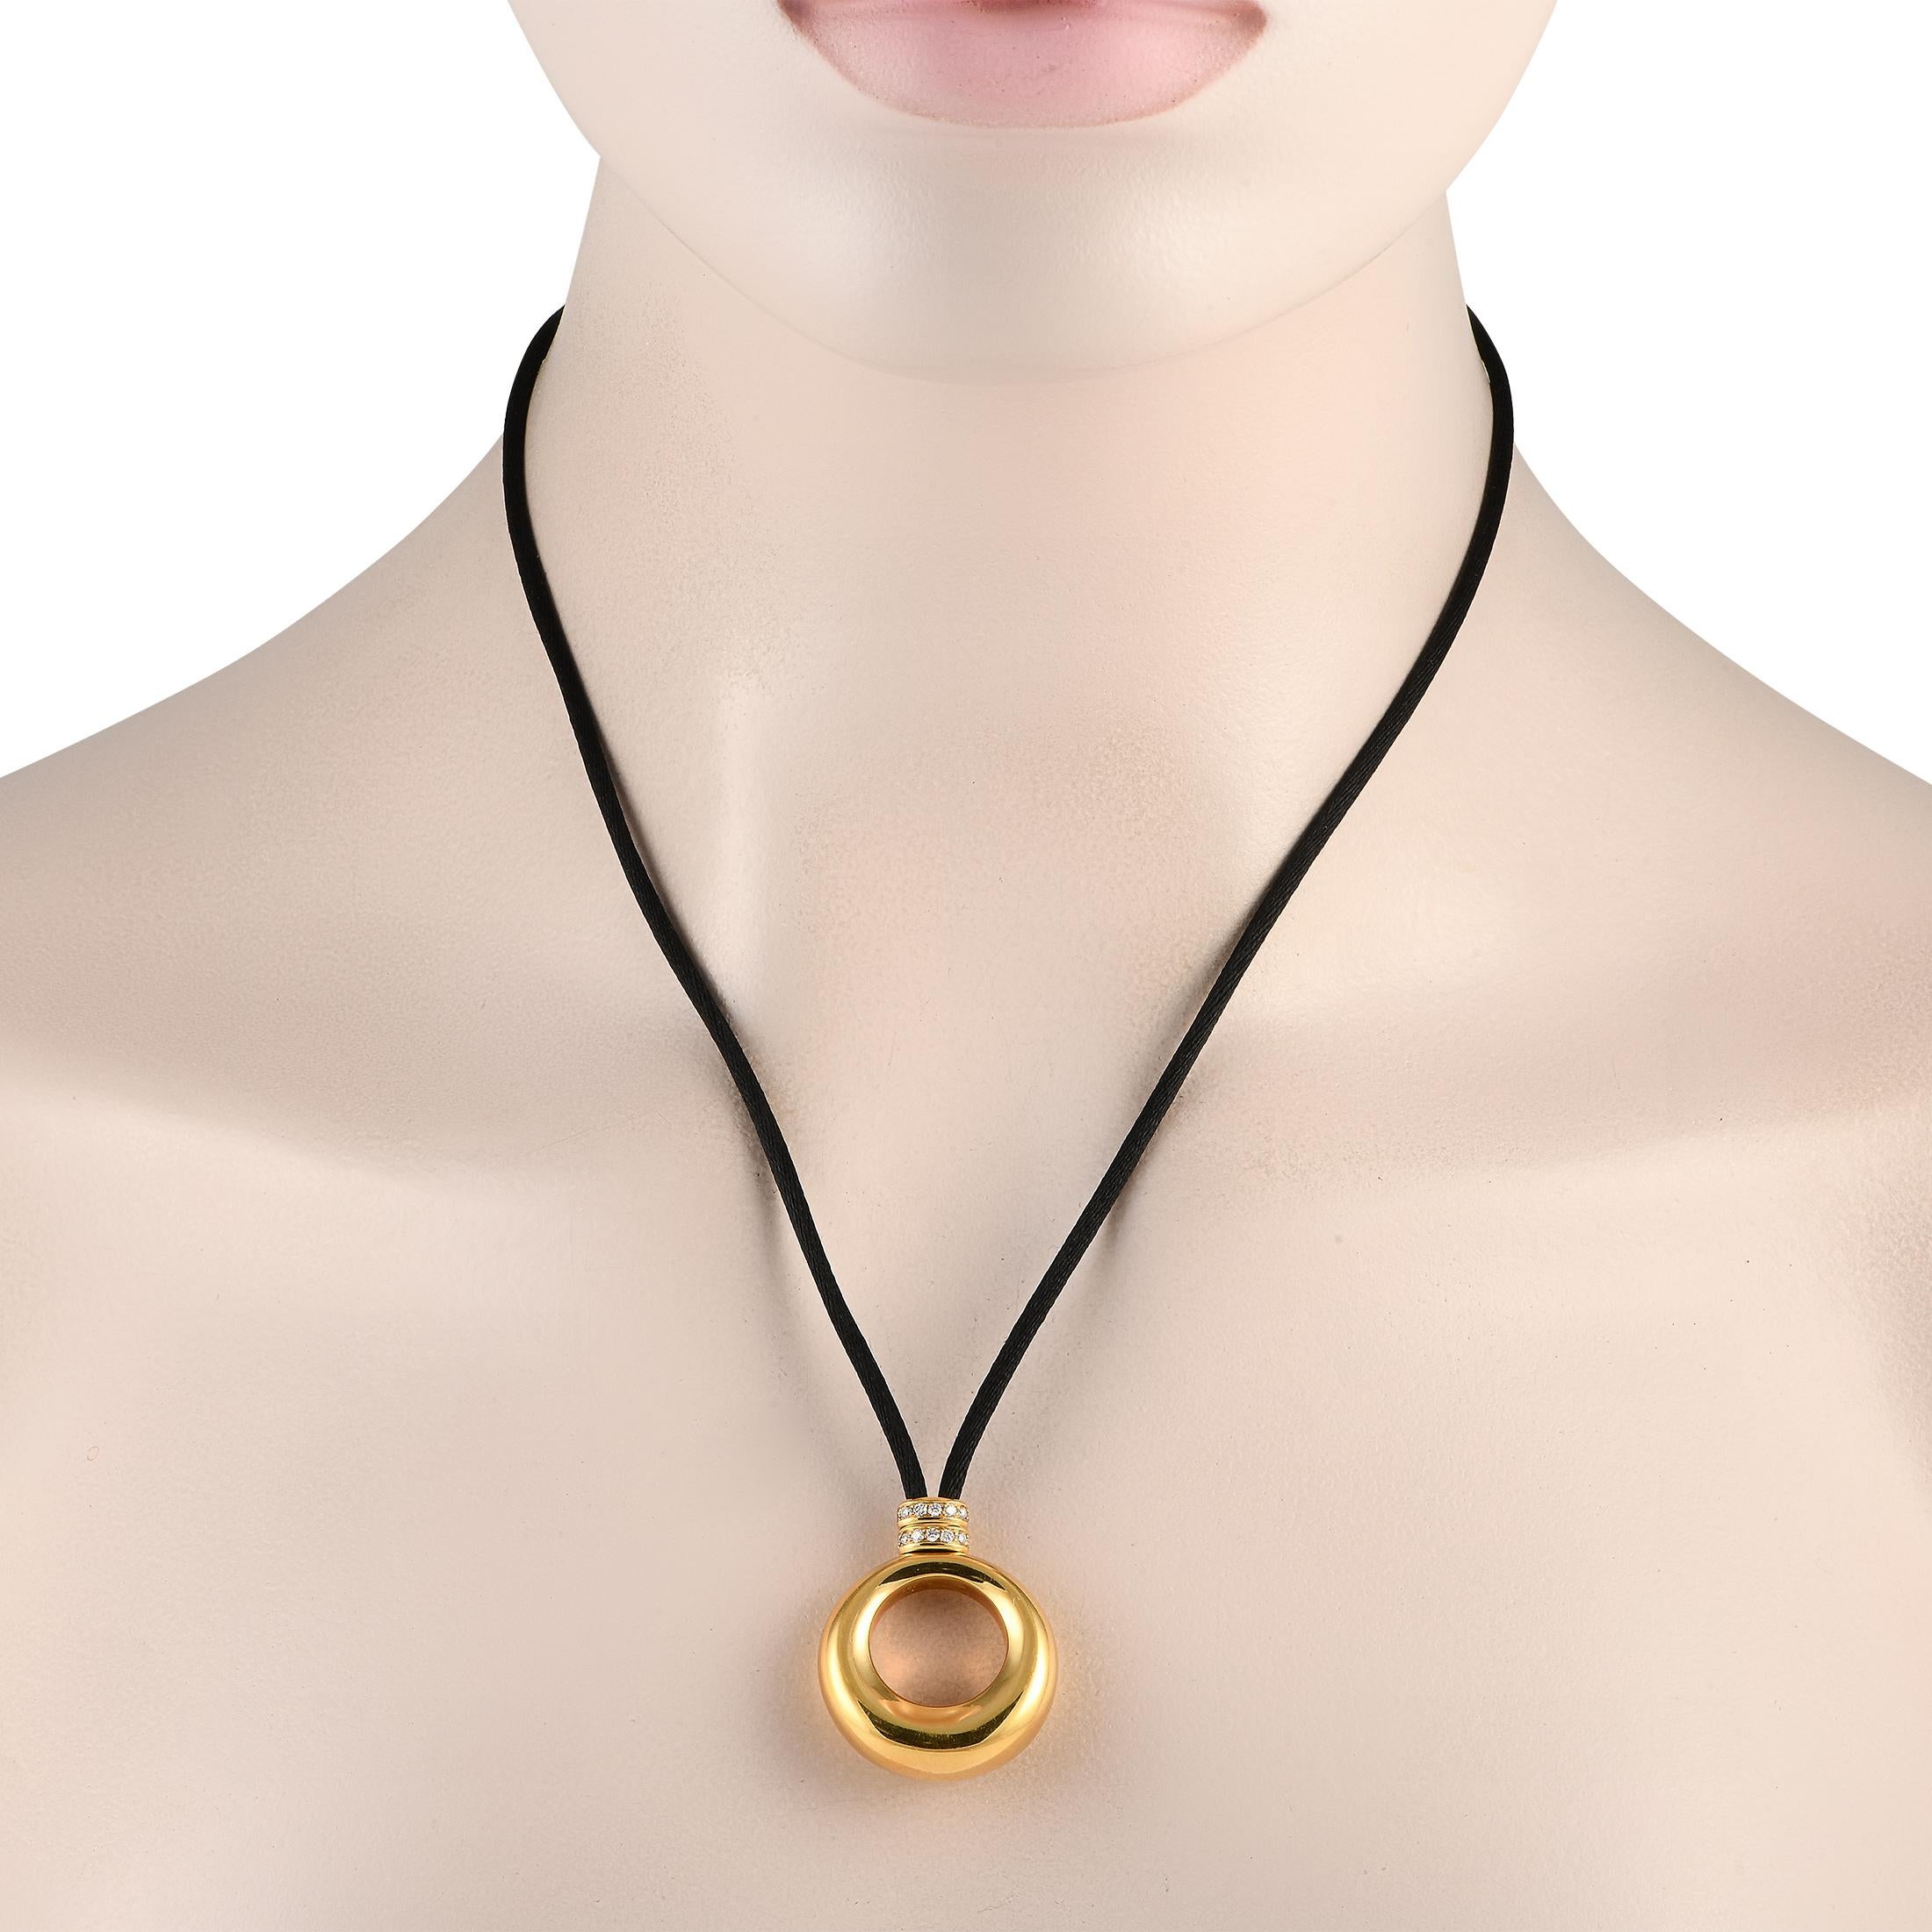 Ce collier Chaumet possède une élégance discrète. Suspendu à un cordon de soie de 30, vous trouverez un pendentif en or jaune 18 carats élégant et sophistiqué mesurant 1,45 de long sur 1,0 de large. Les accents de diamant à la base du pendentif le